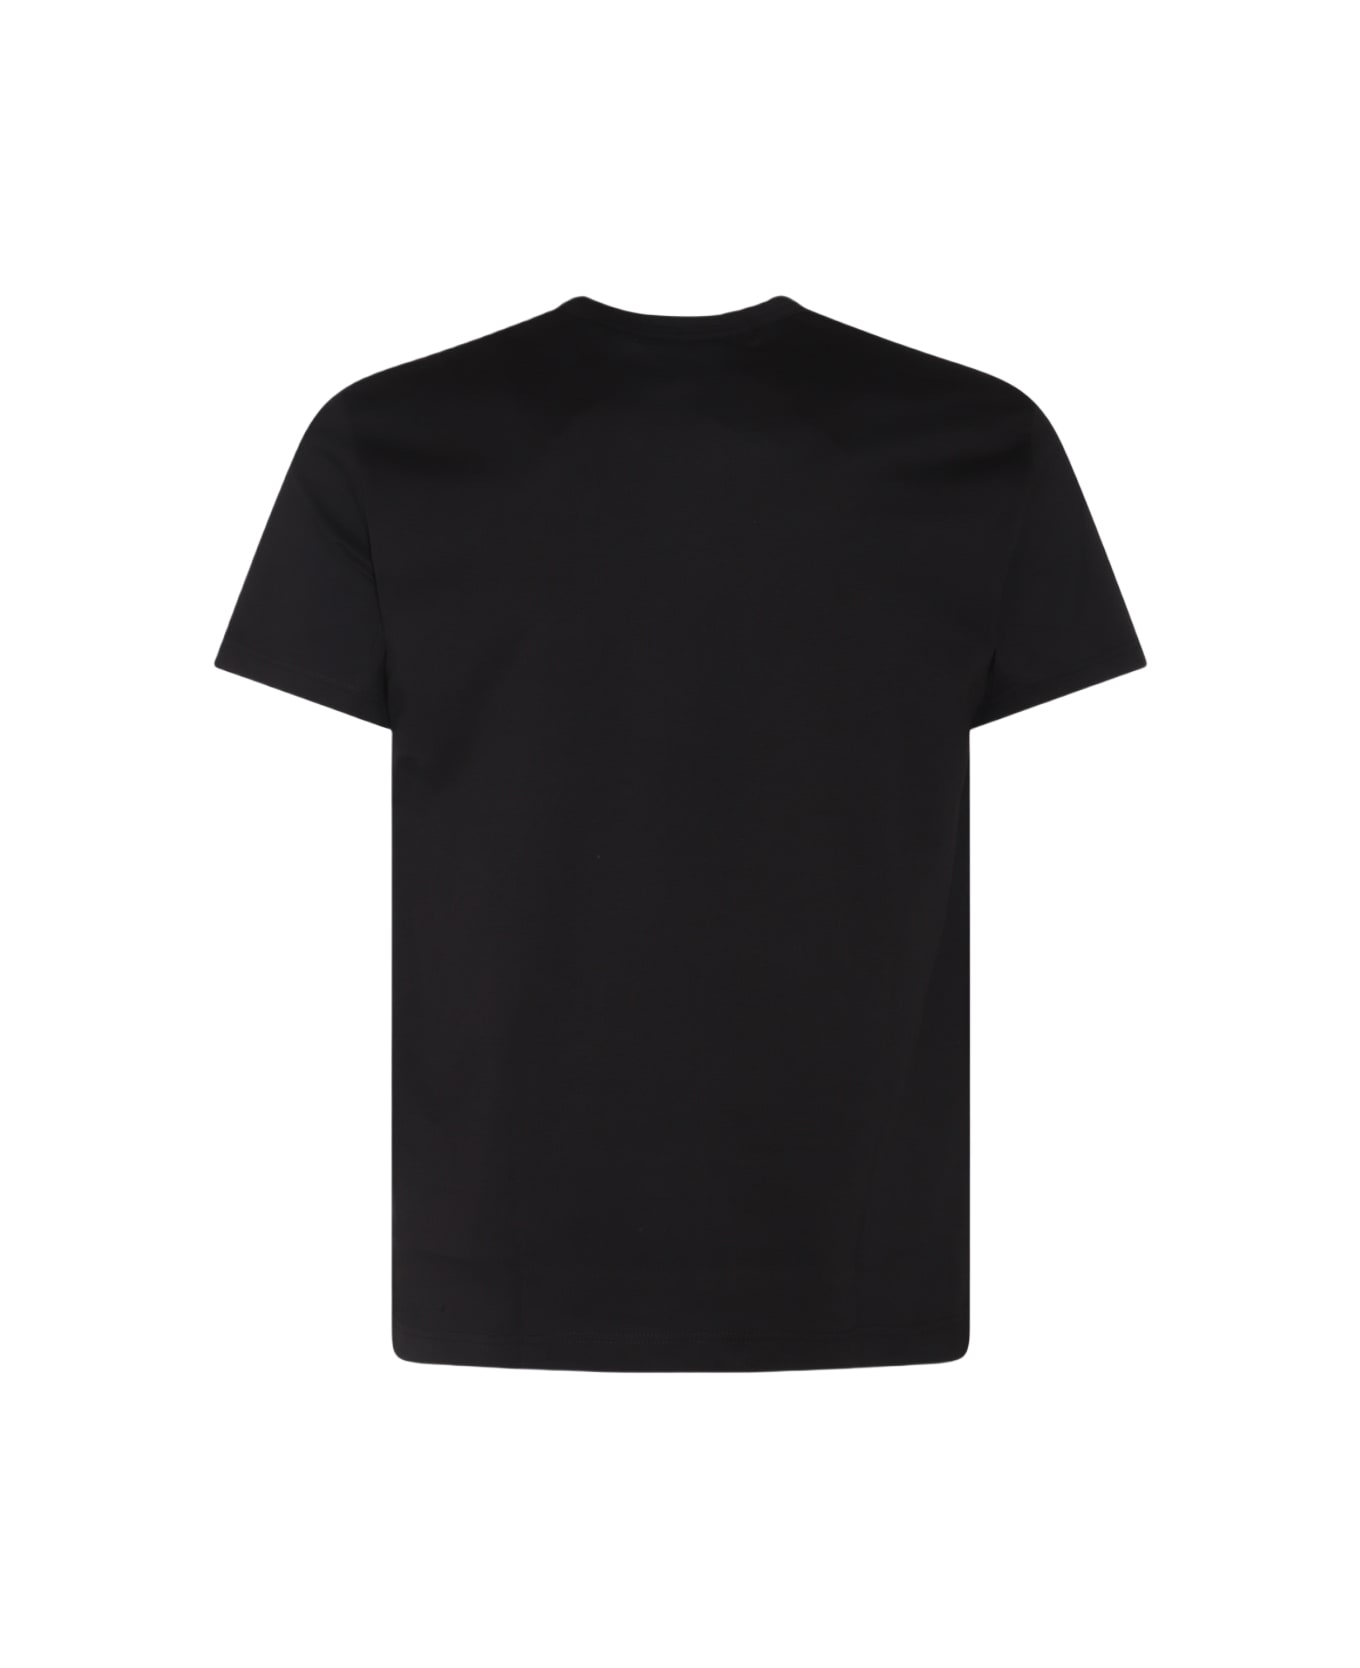 Comme des Garçons Black Cotton T-shirt - Black